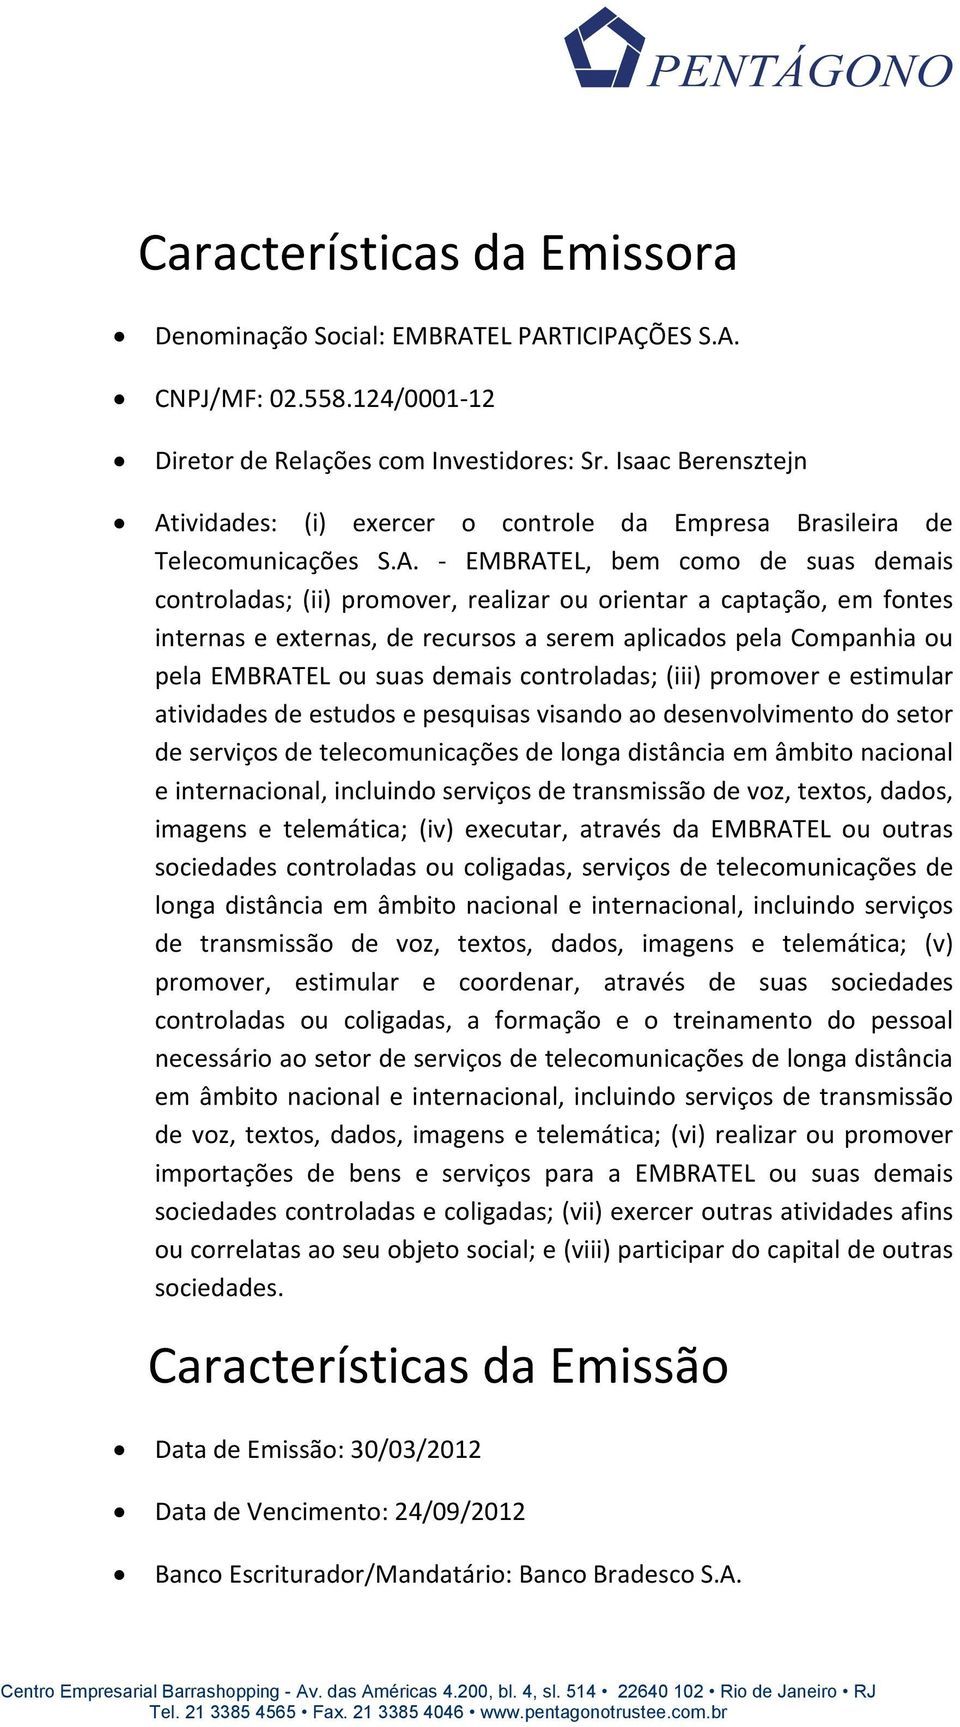 ividades: (i) exercer o controle da Empresa Brasileira de Telecomunicações S.A.